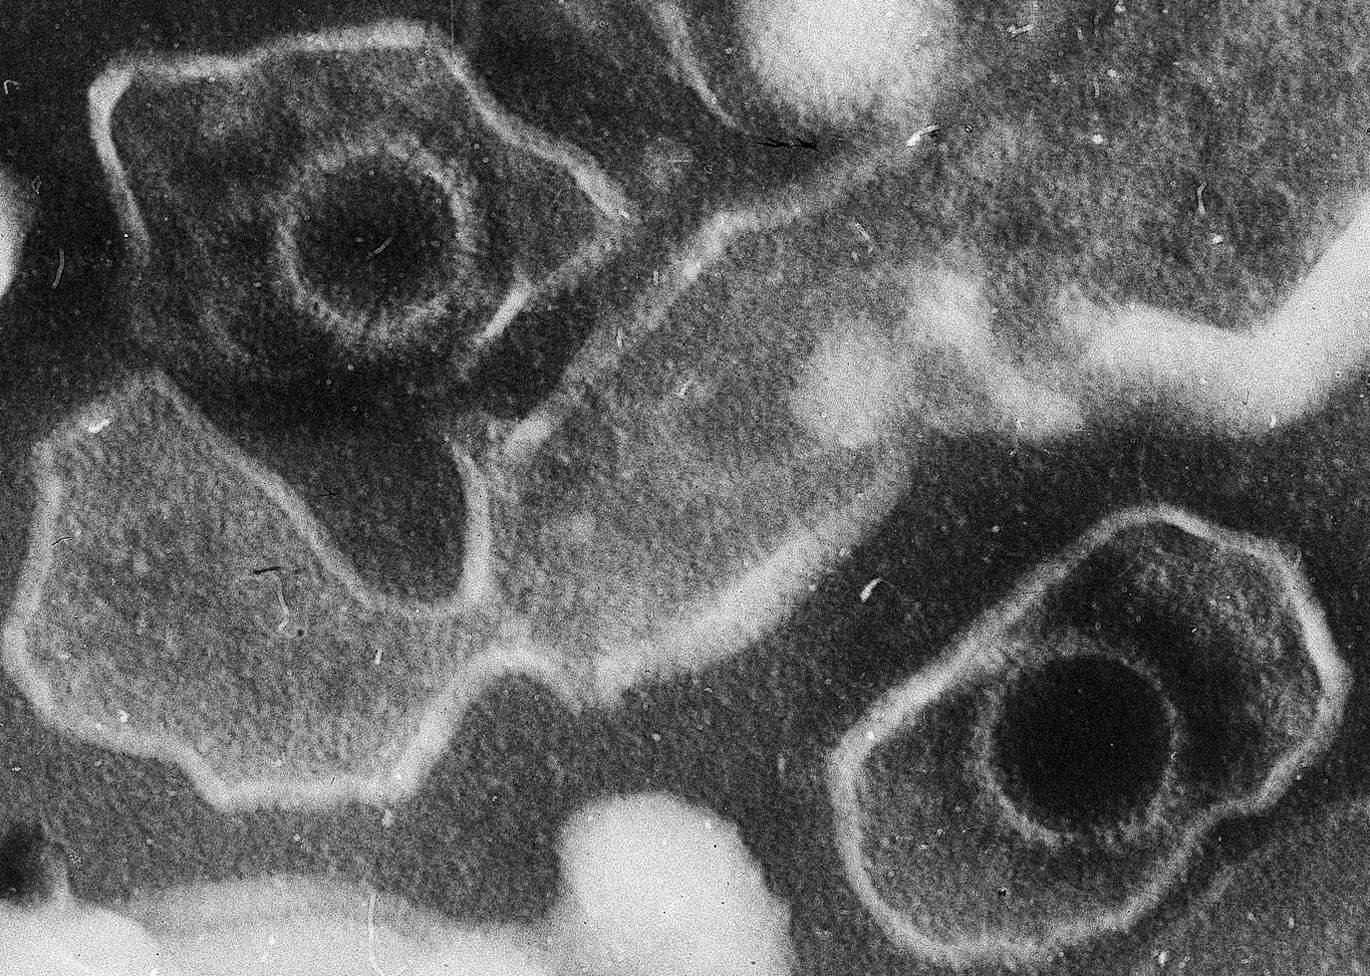 Két Epstein-Barr vírusrészecske (bal fent, jobb lent) egy elektronmikroszkópos felvételen